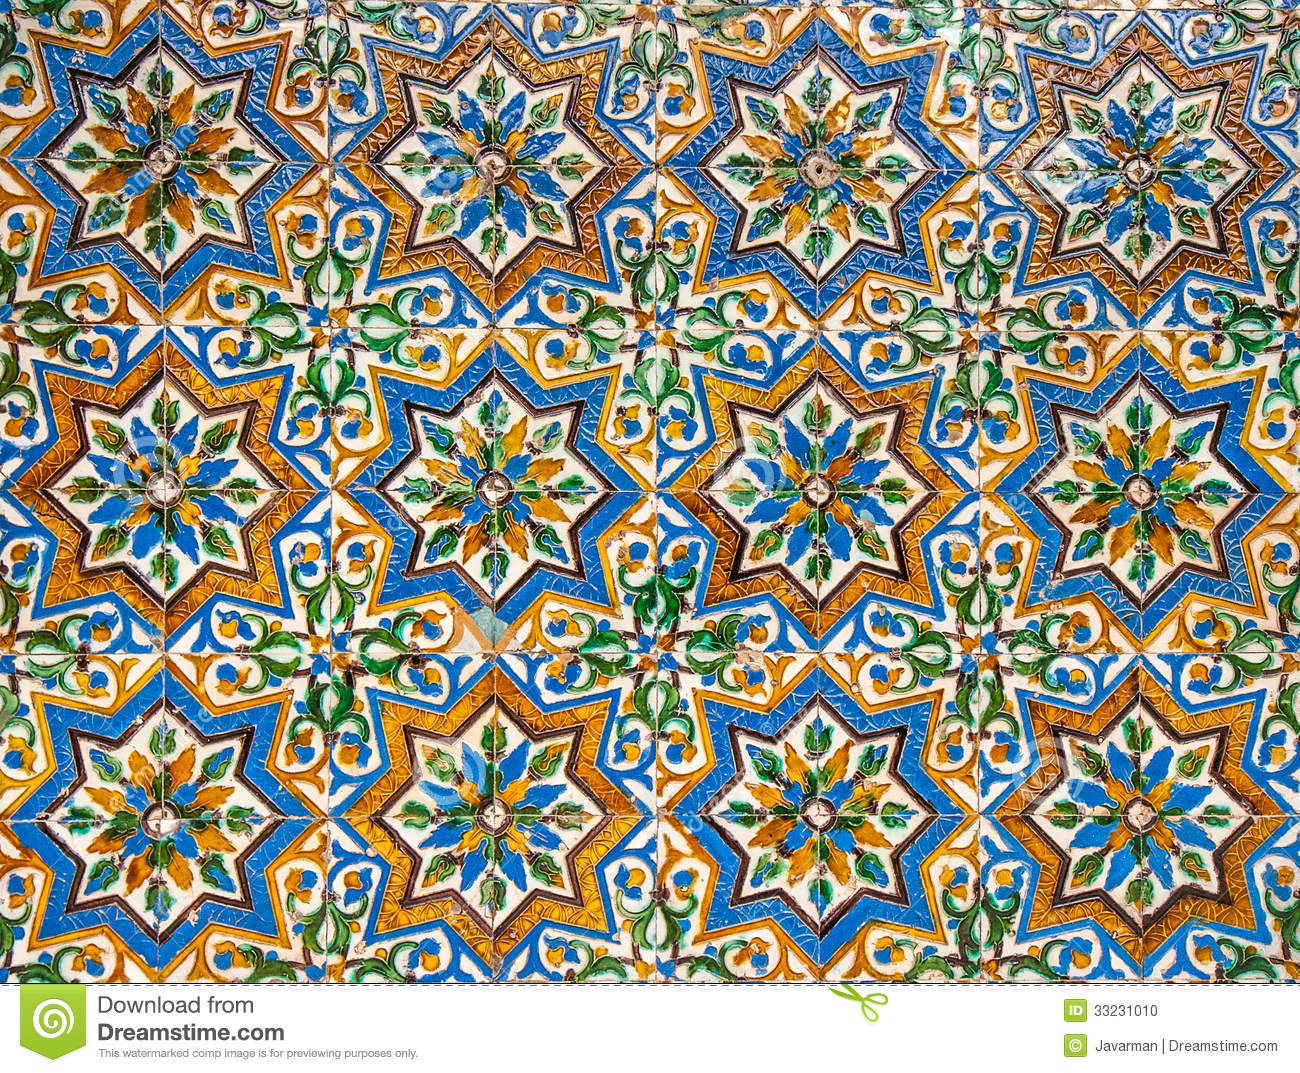 Moroccan Tile Wallpaper - WallpaperSafari